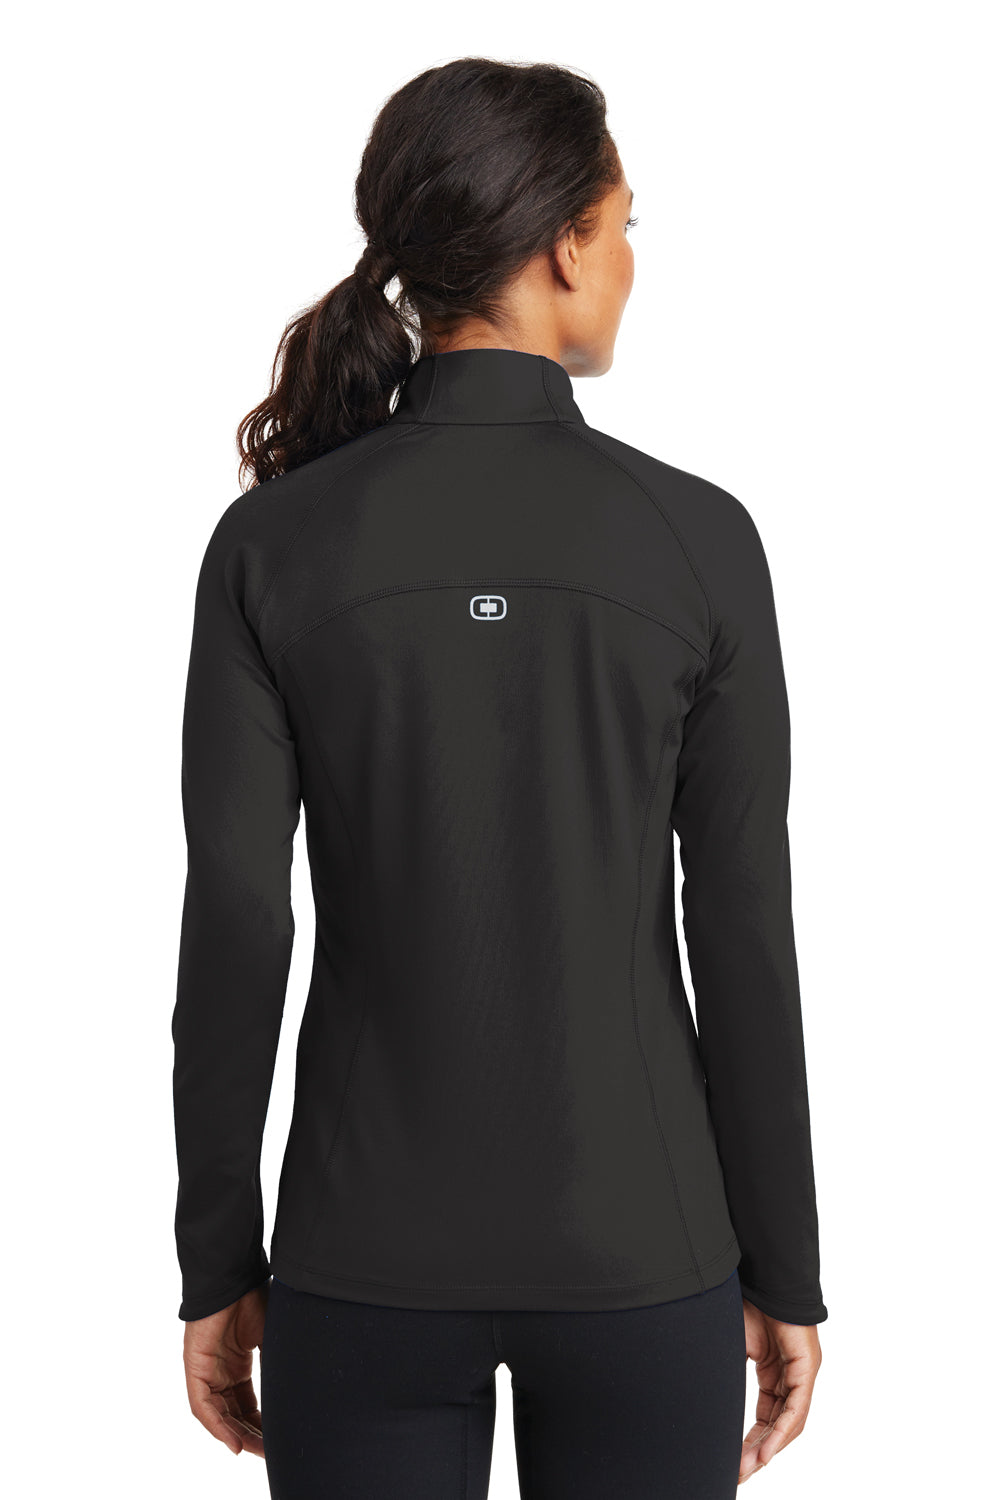 Ogio LOE551 Womens Endurance Radius Moisture Wicking Full Zip Sweatshirt Black Back